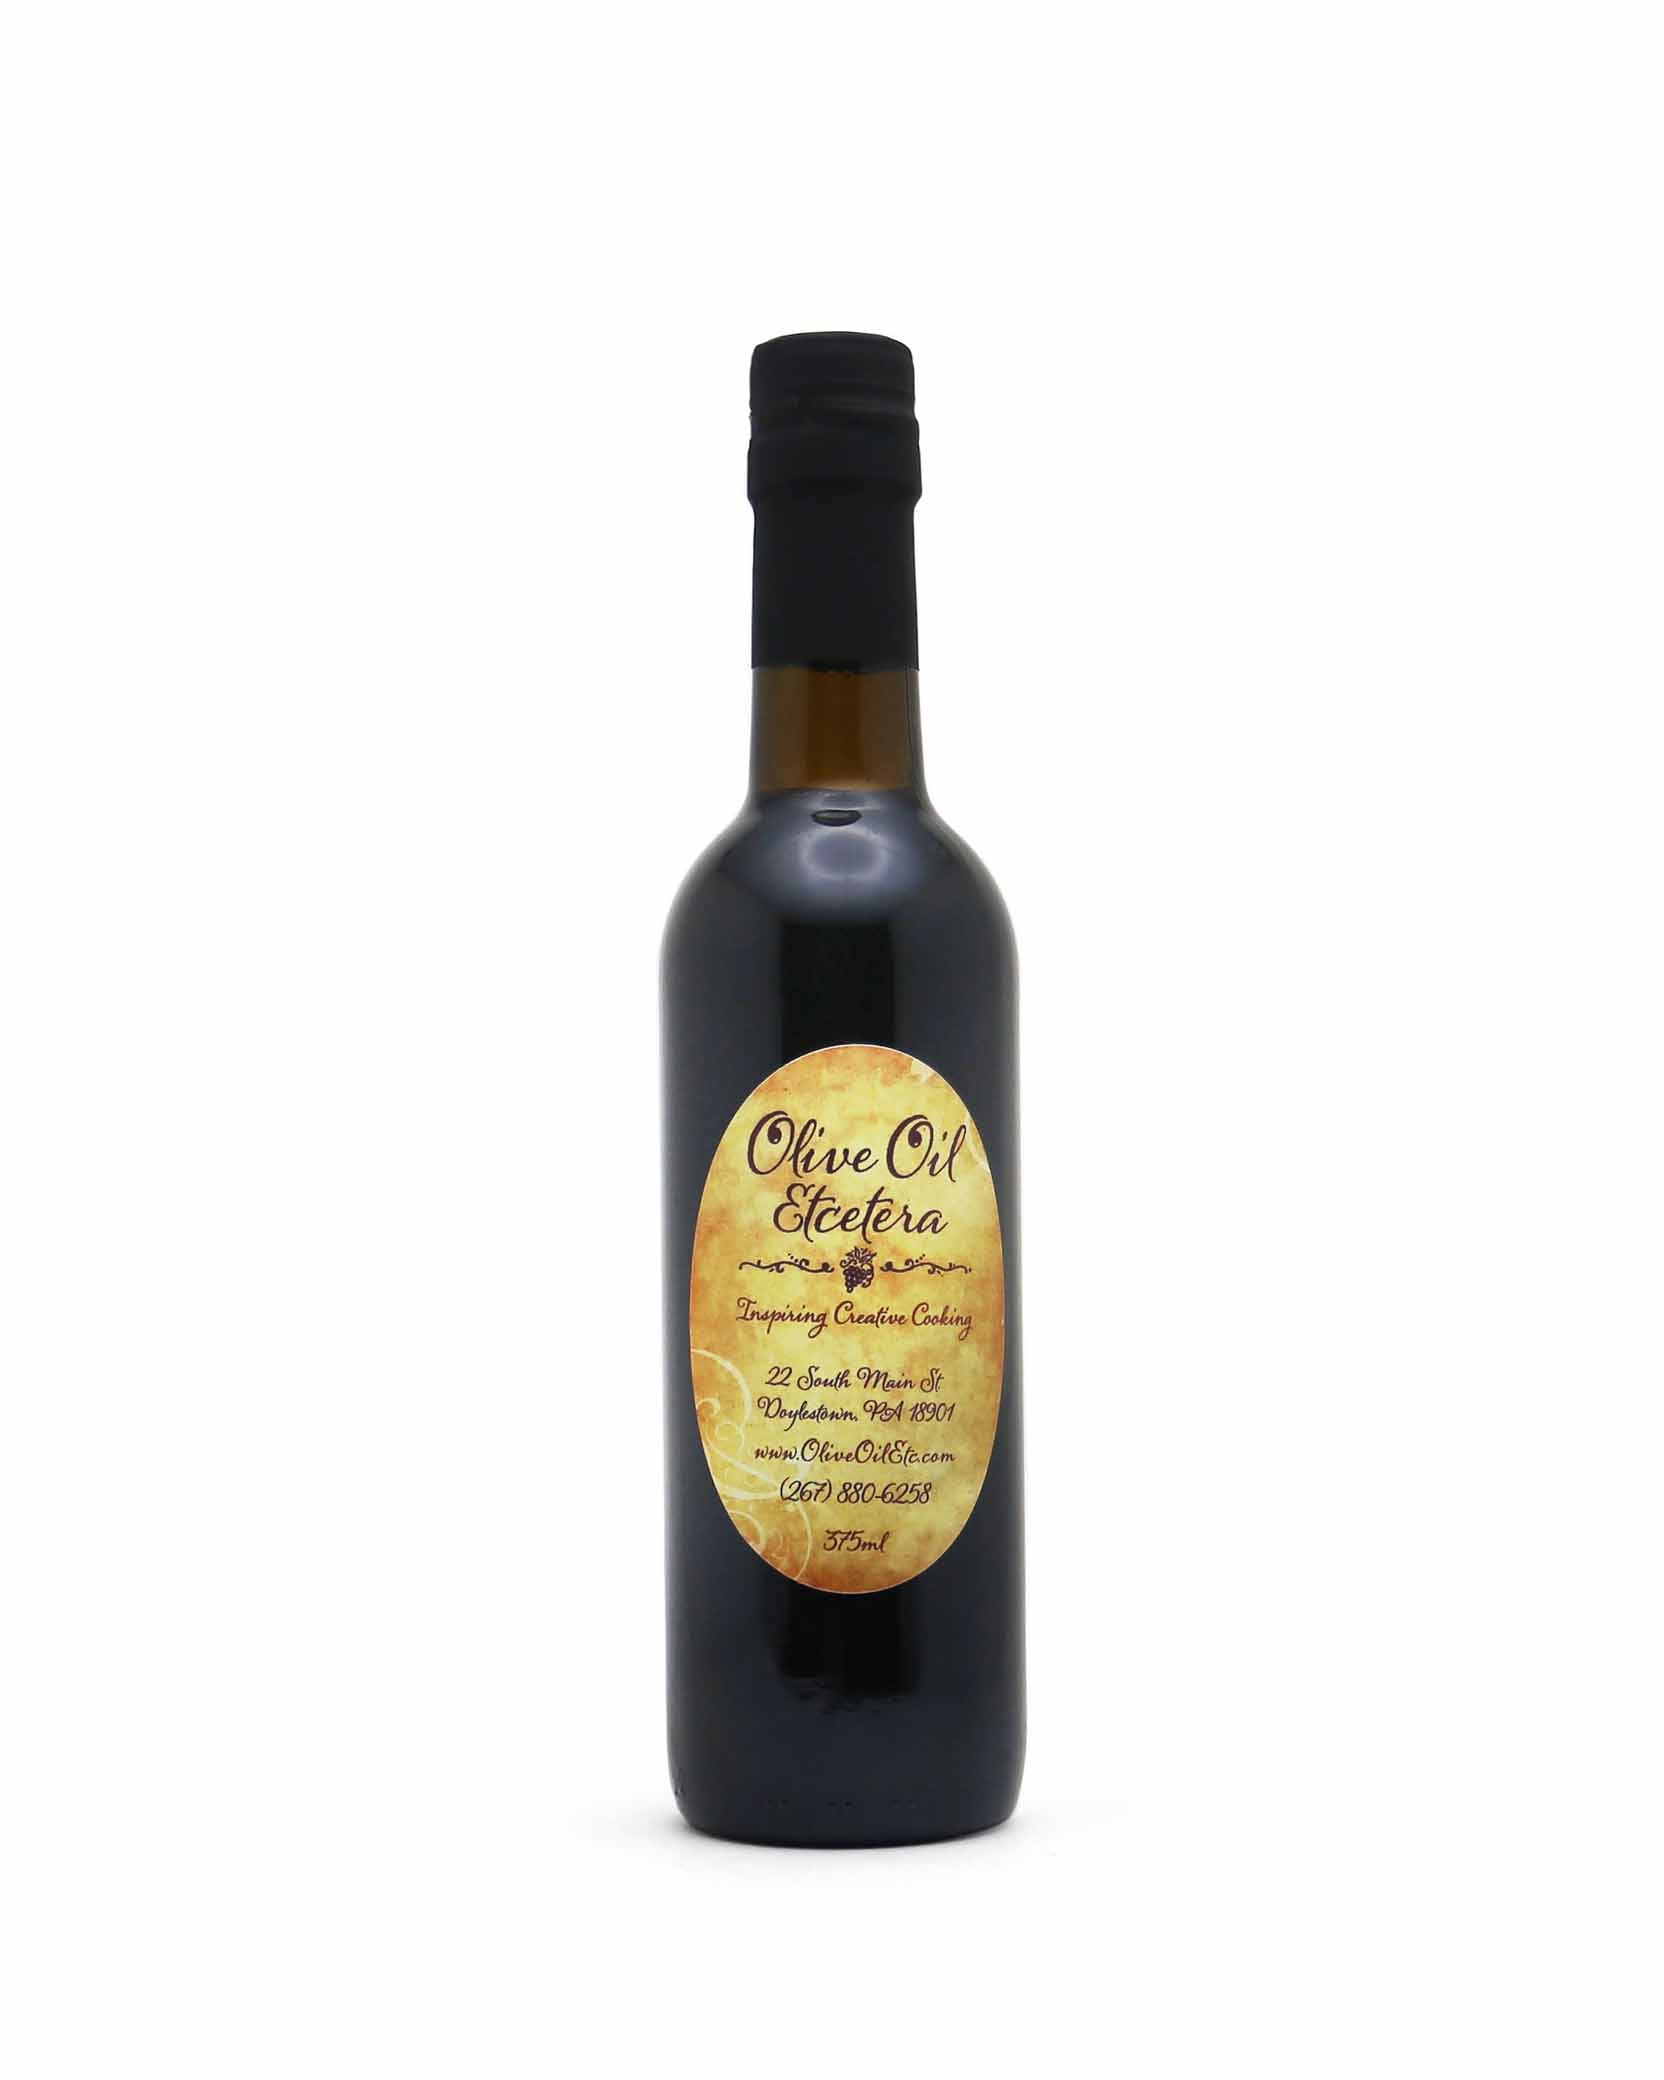 Blood Orange Olive Oil - Olive Oil Etcetera - Bucks county's gourmet olive oil and vinegar shop